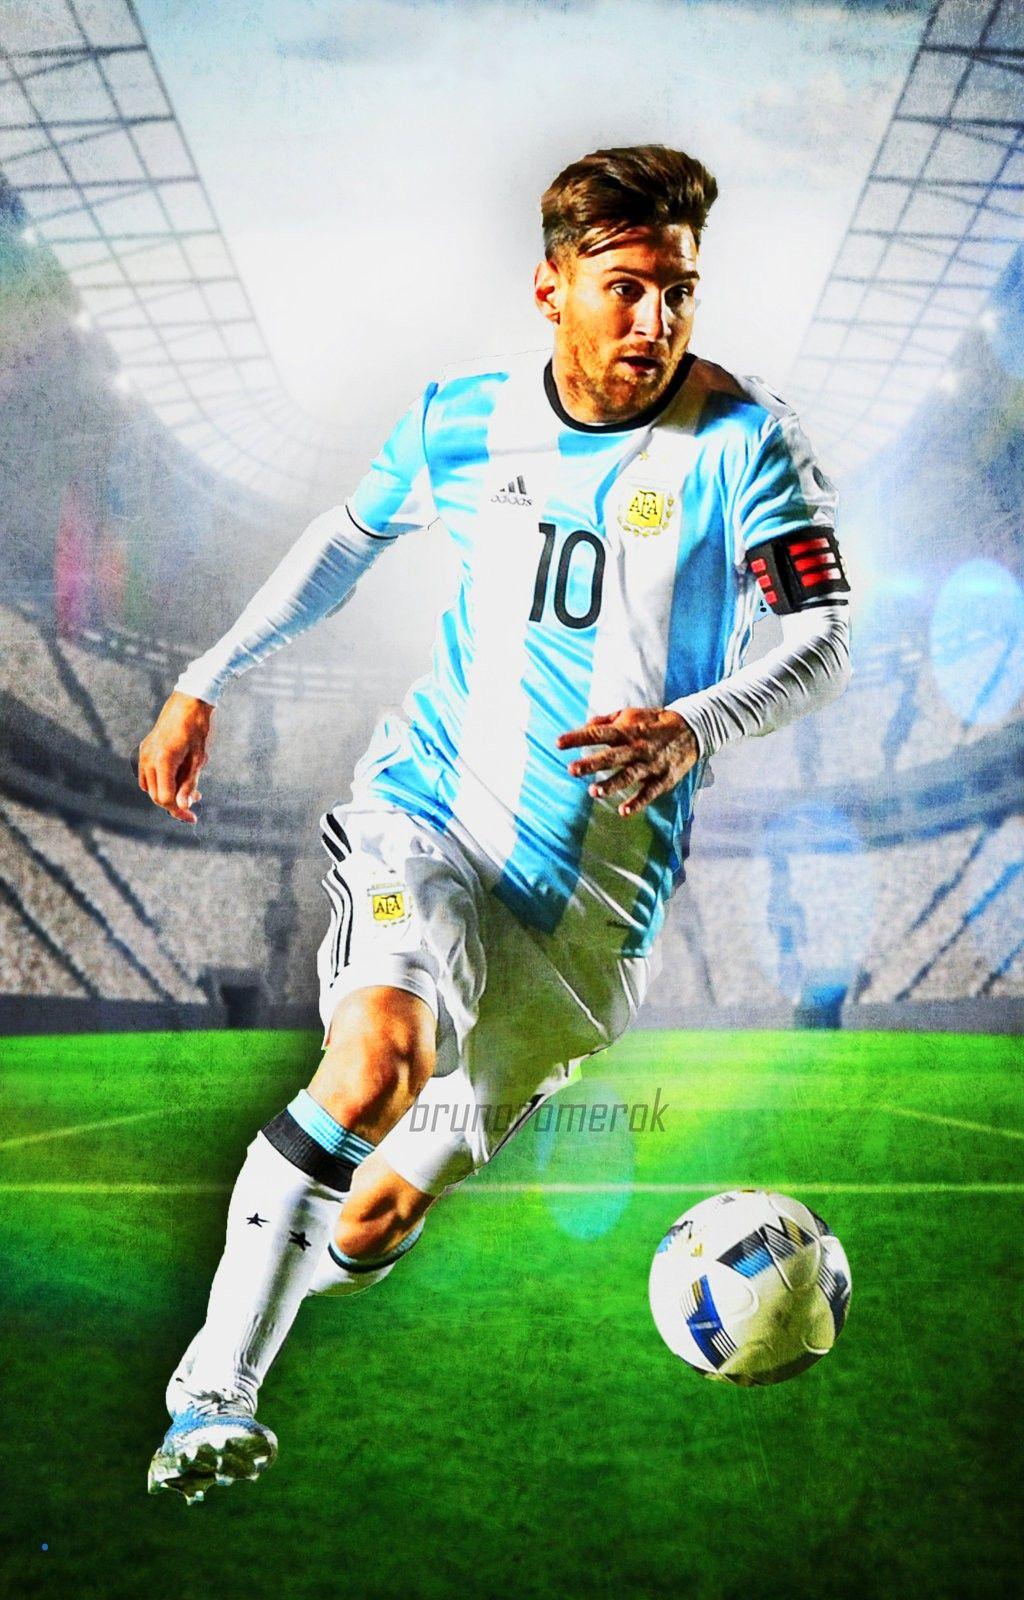 Messi Wallpaper Argentina Elegant. Artdev Football Wallpaper